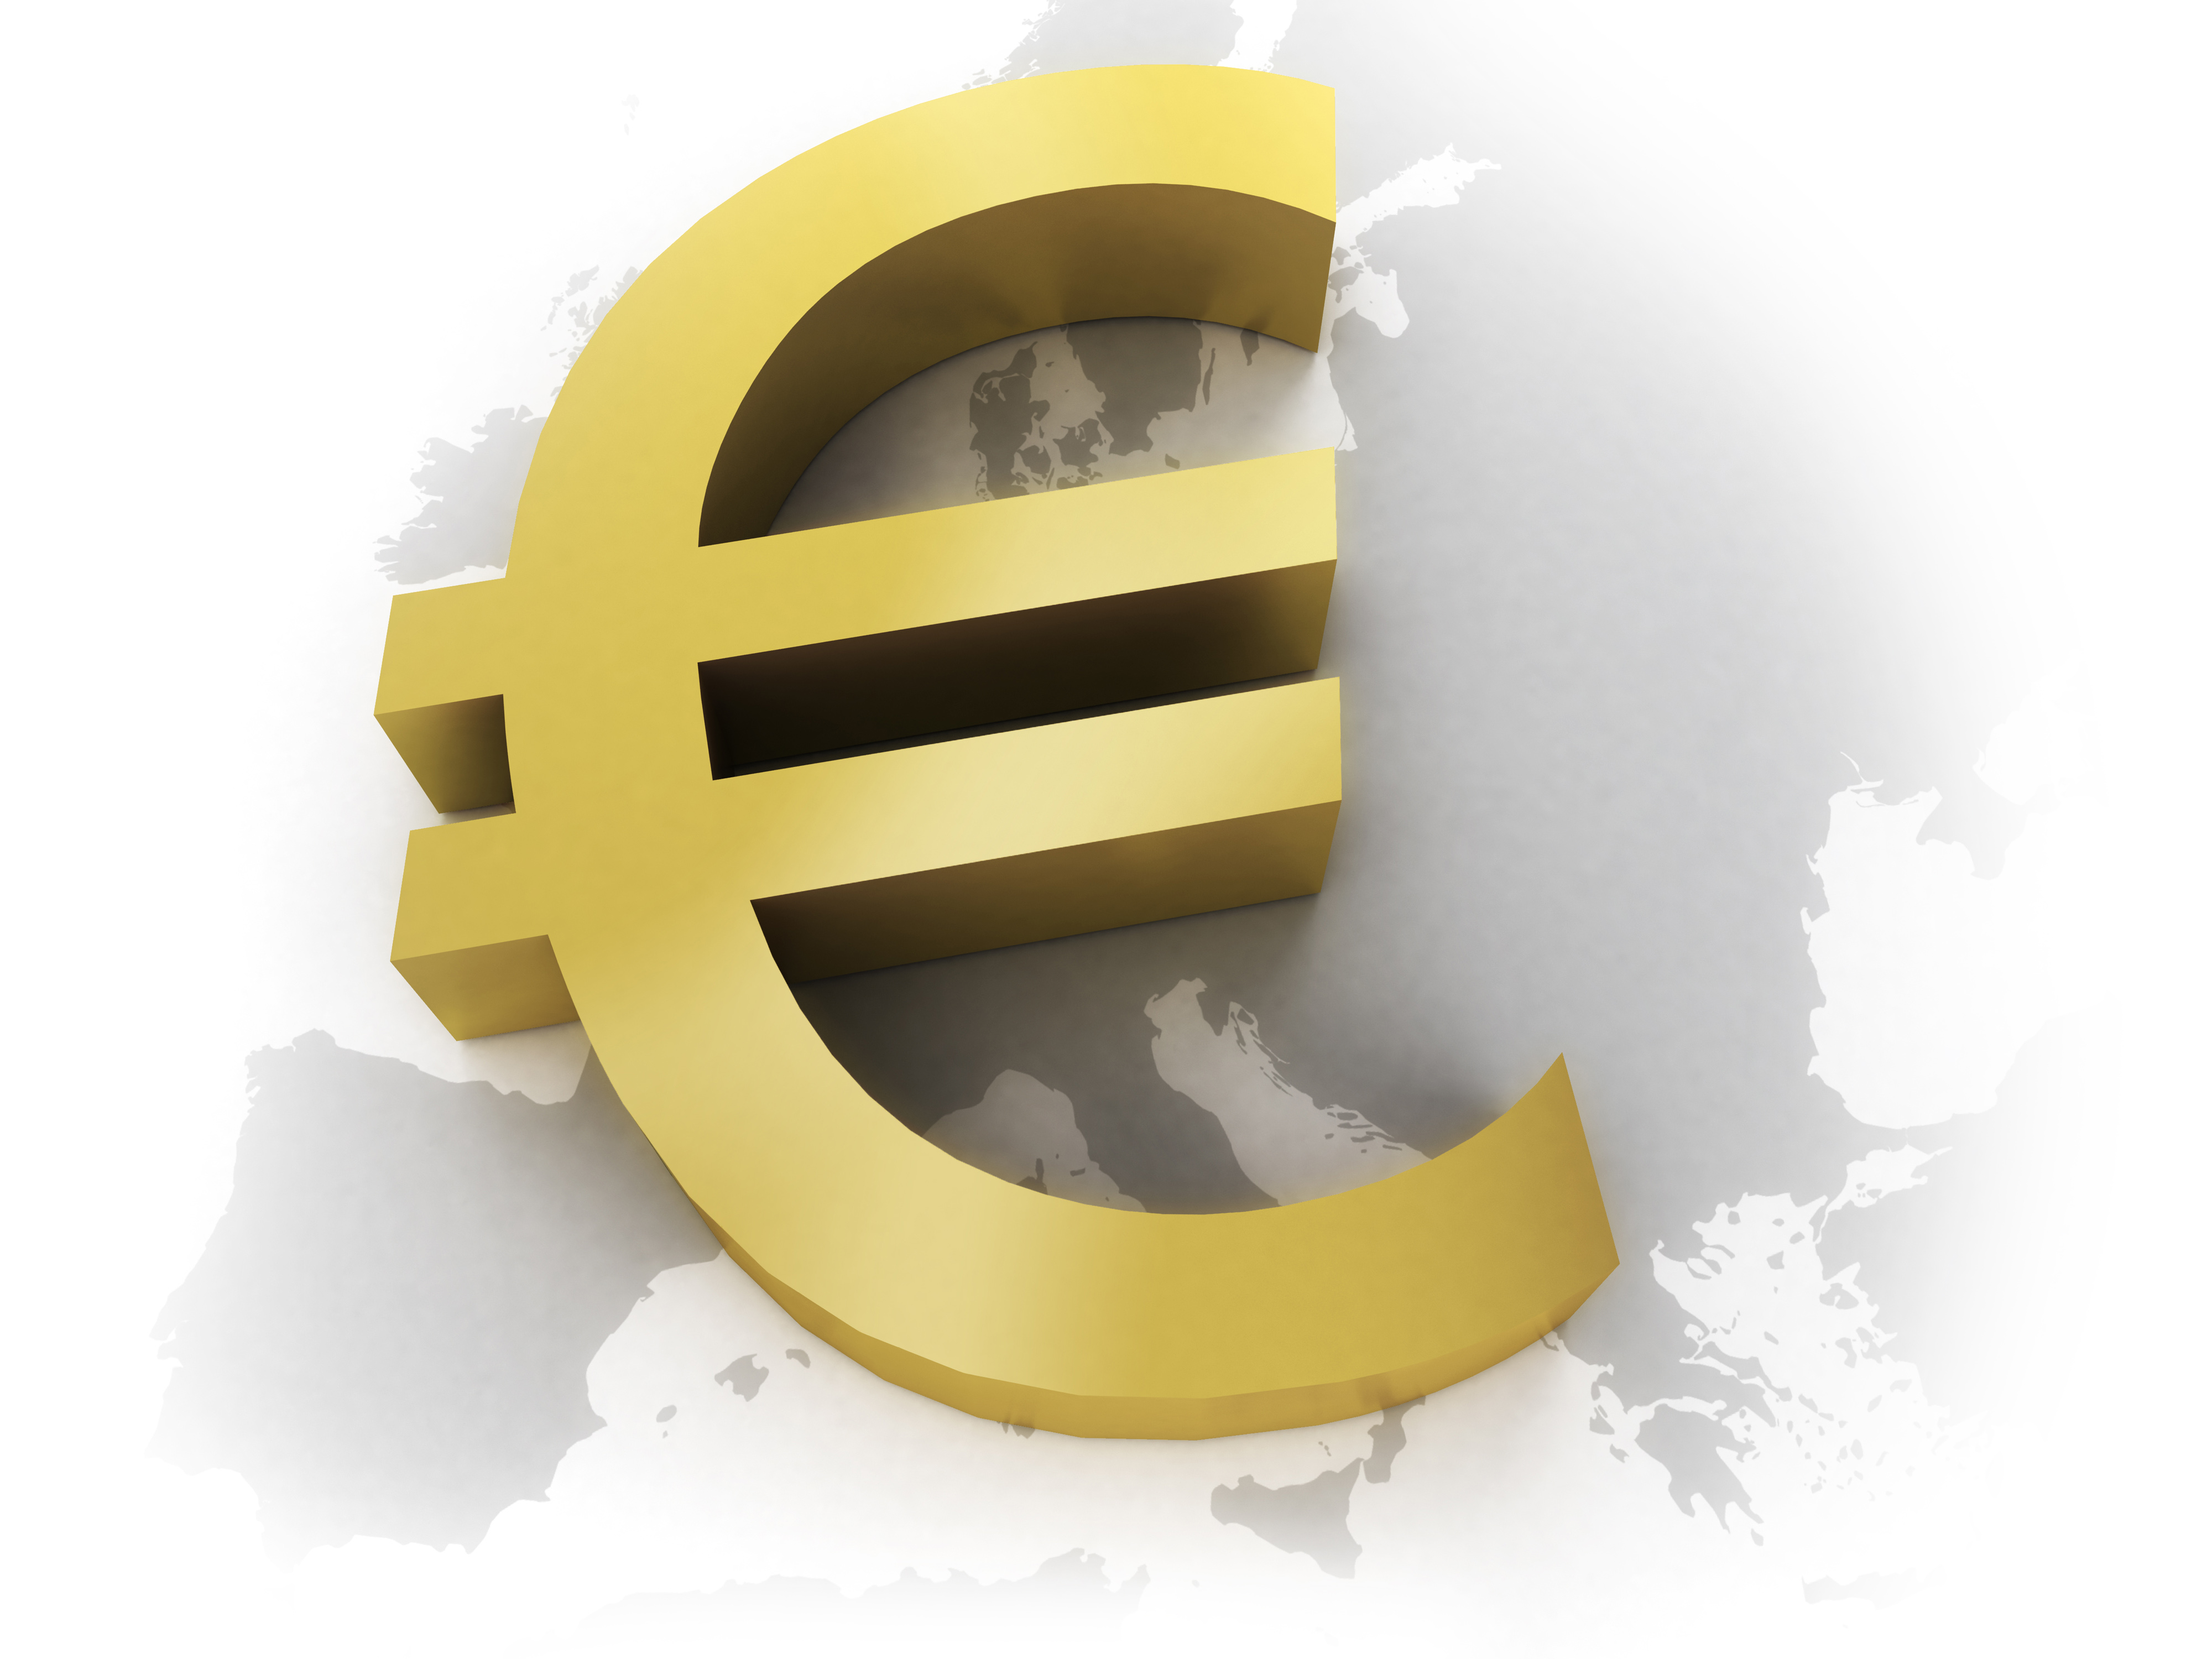 Πολλοί οικονομολόγοι είχαν προβληματιστεί εδώ και καιρό για το μέλλον του ευρώ